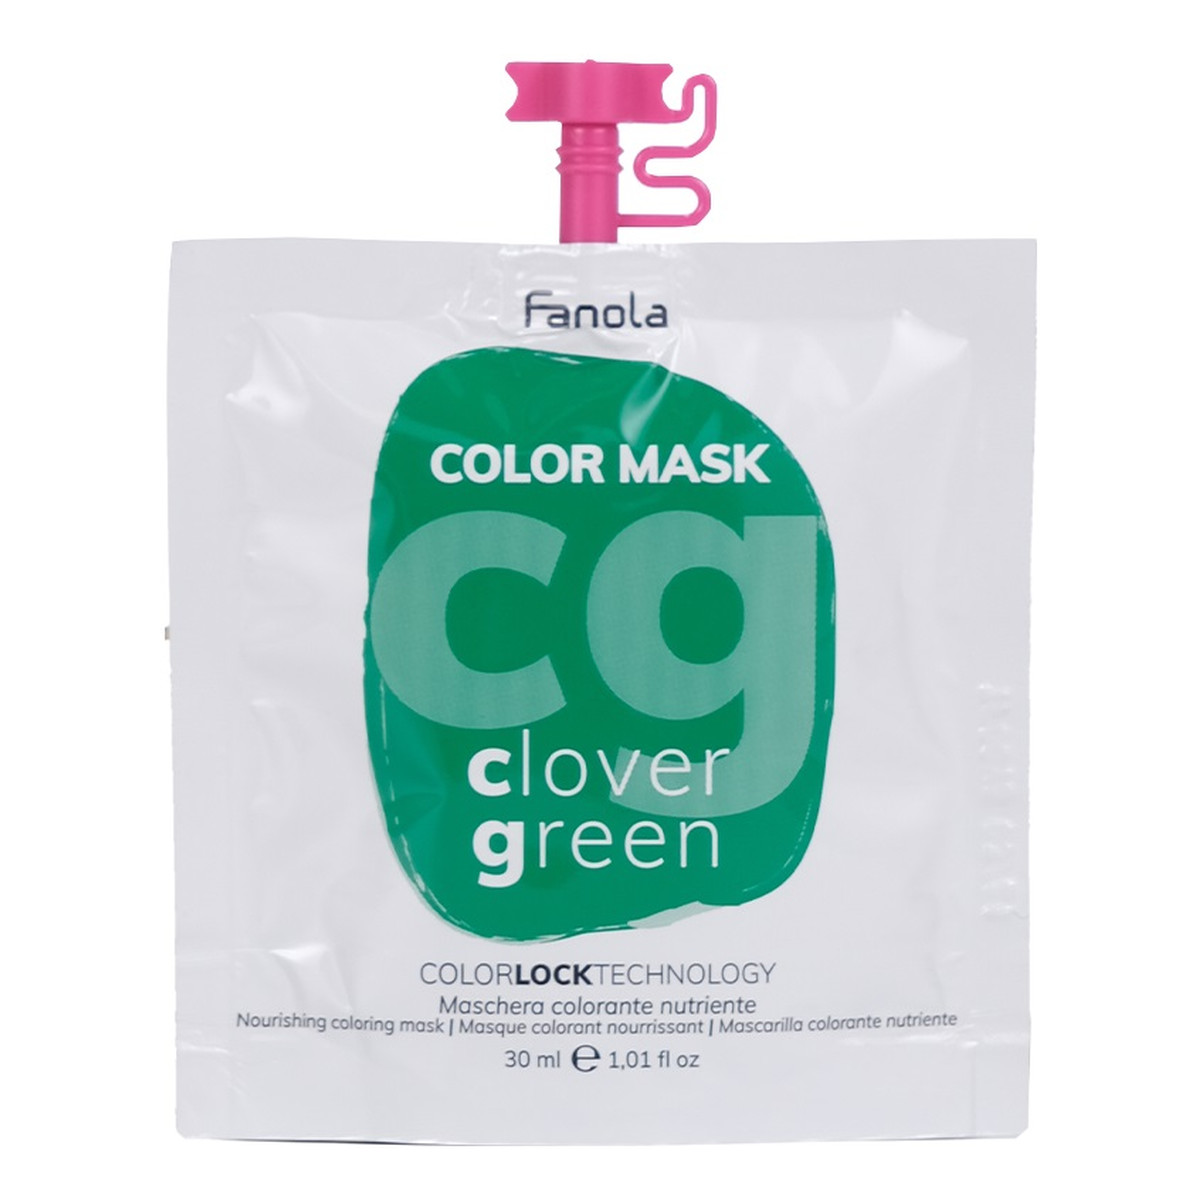 Fanola Color mask maska koloryzująca do włosów clover green 30ml